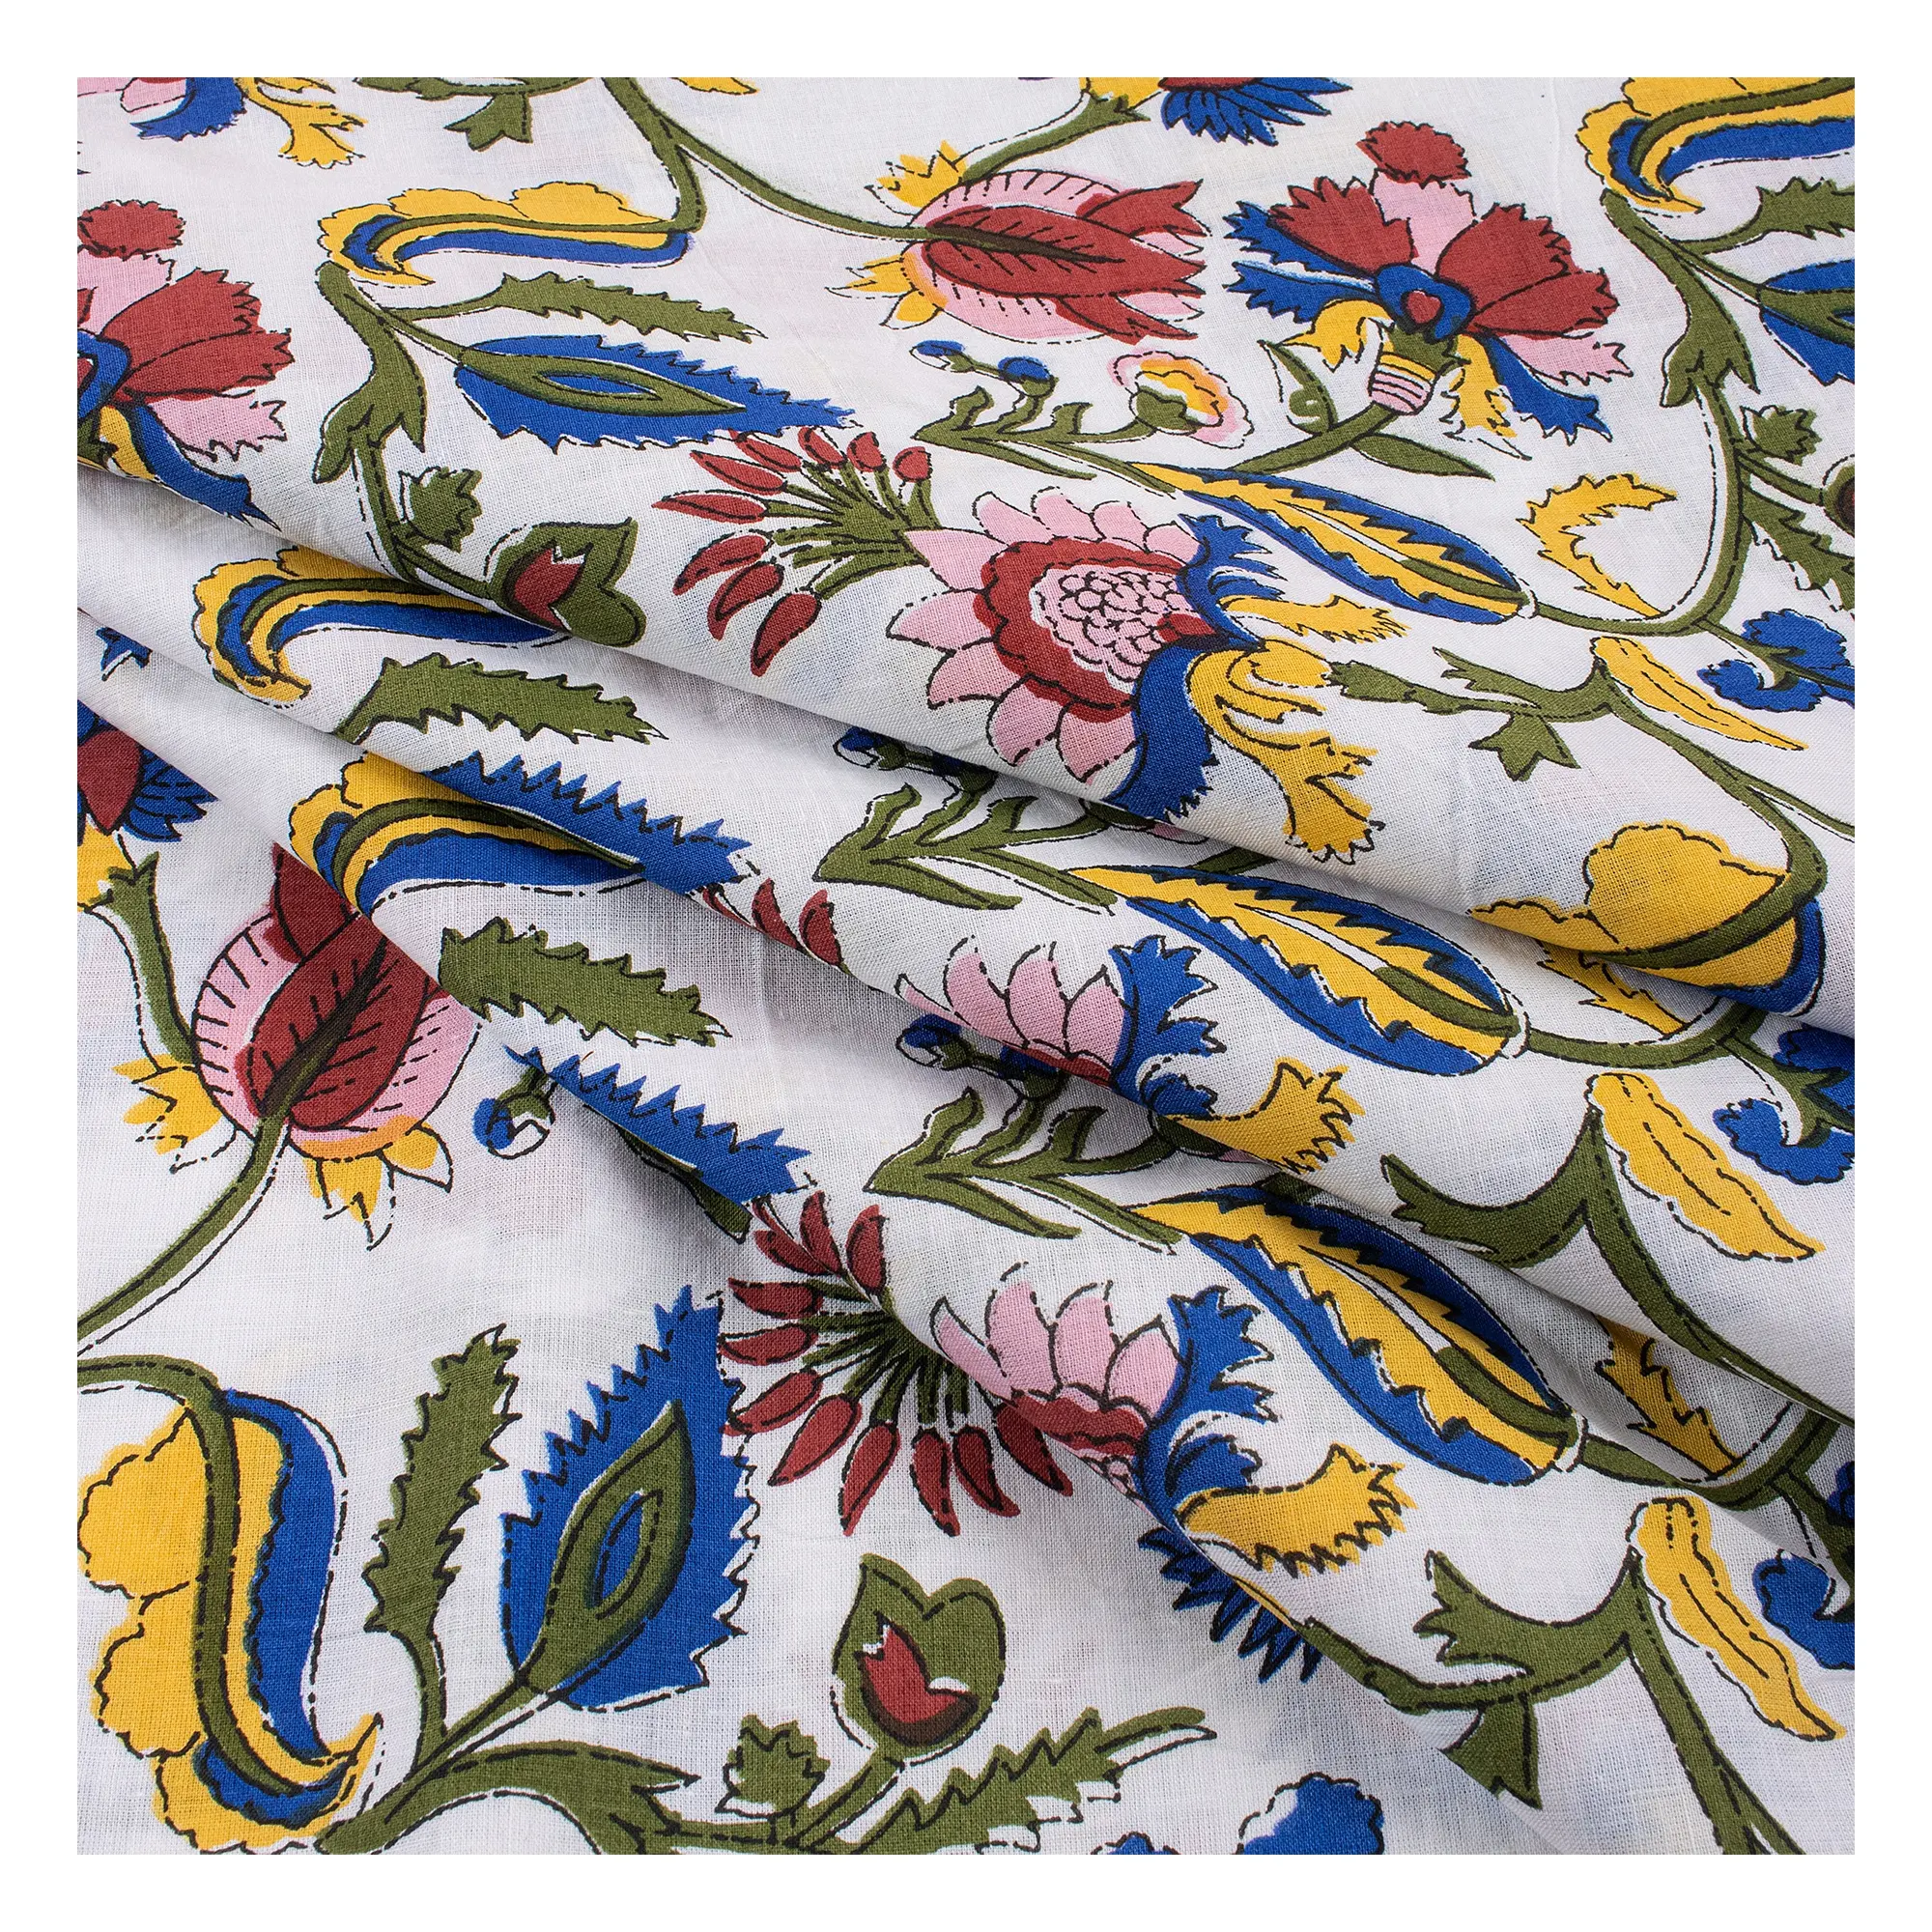 Neueste Kollektion indischer Handblock Blumentruck hohe Qualität schöner Stoff Großhandel Sommer Baumwollkleid Stoff leichtes Gewicht